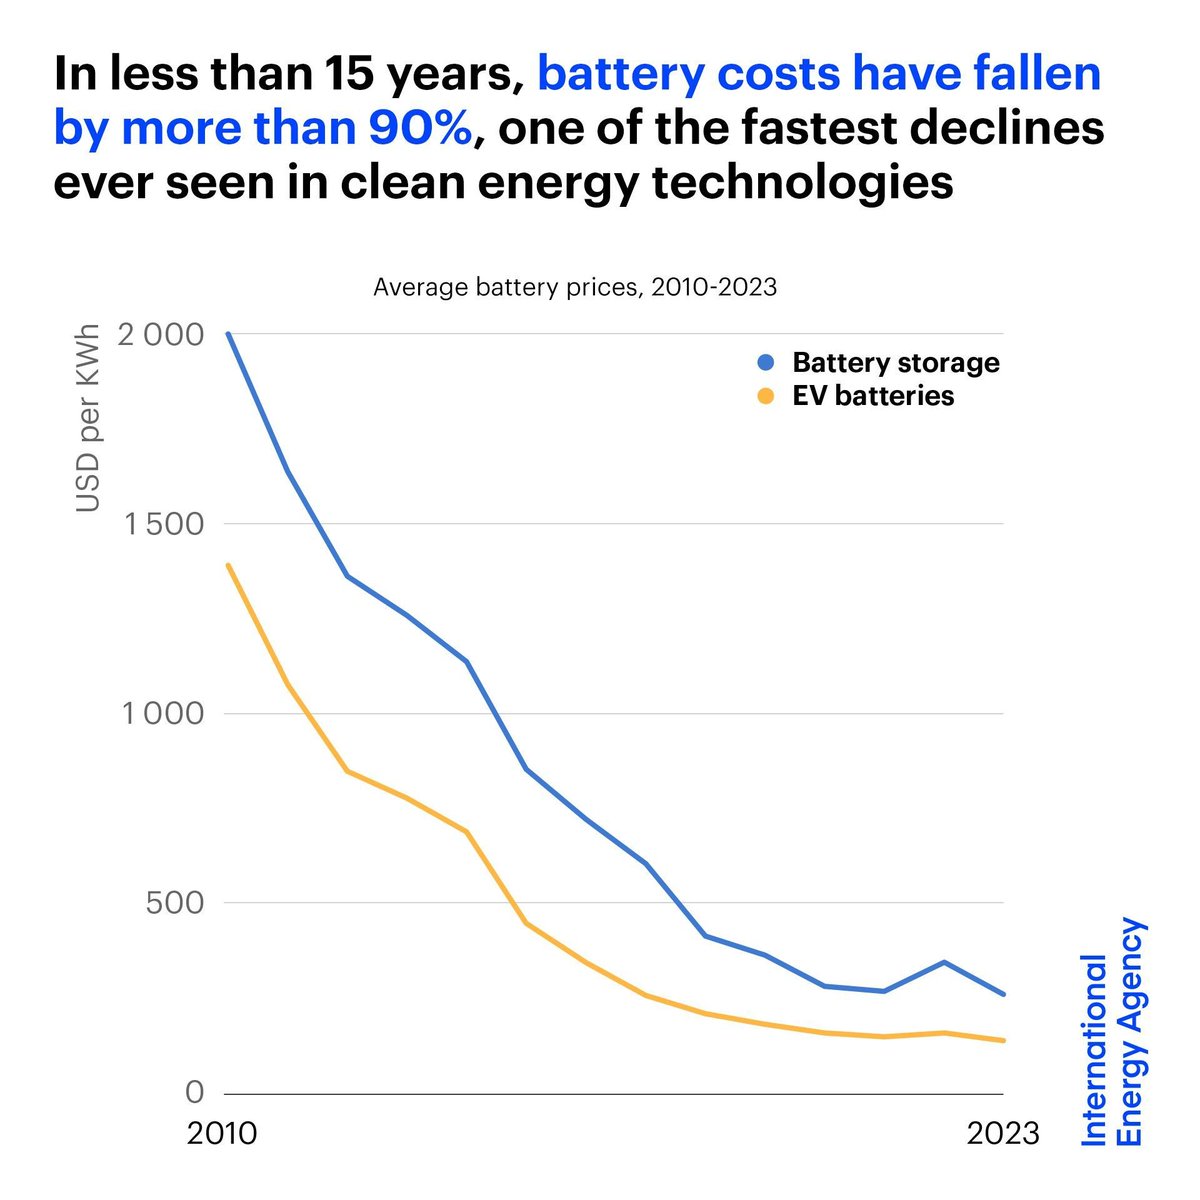 Es ist alles so beeindruckend - wir erleben das, was wir bei Solar (und Wind) gesehen haben, nun bei Batterien. 

Disruptiver Wandel ist wirklich der Wahnsinn. Unaufhaltsam, selbst wenn man die unsägliche FDP an der Backe kleben hat. Allgemeine Hintergründe zu Disruptionen gibt…